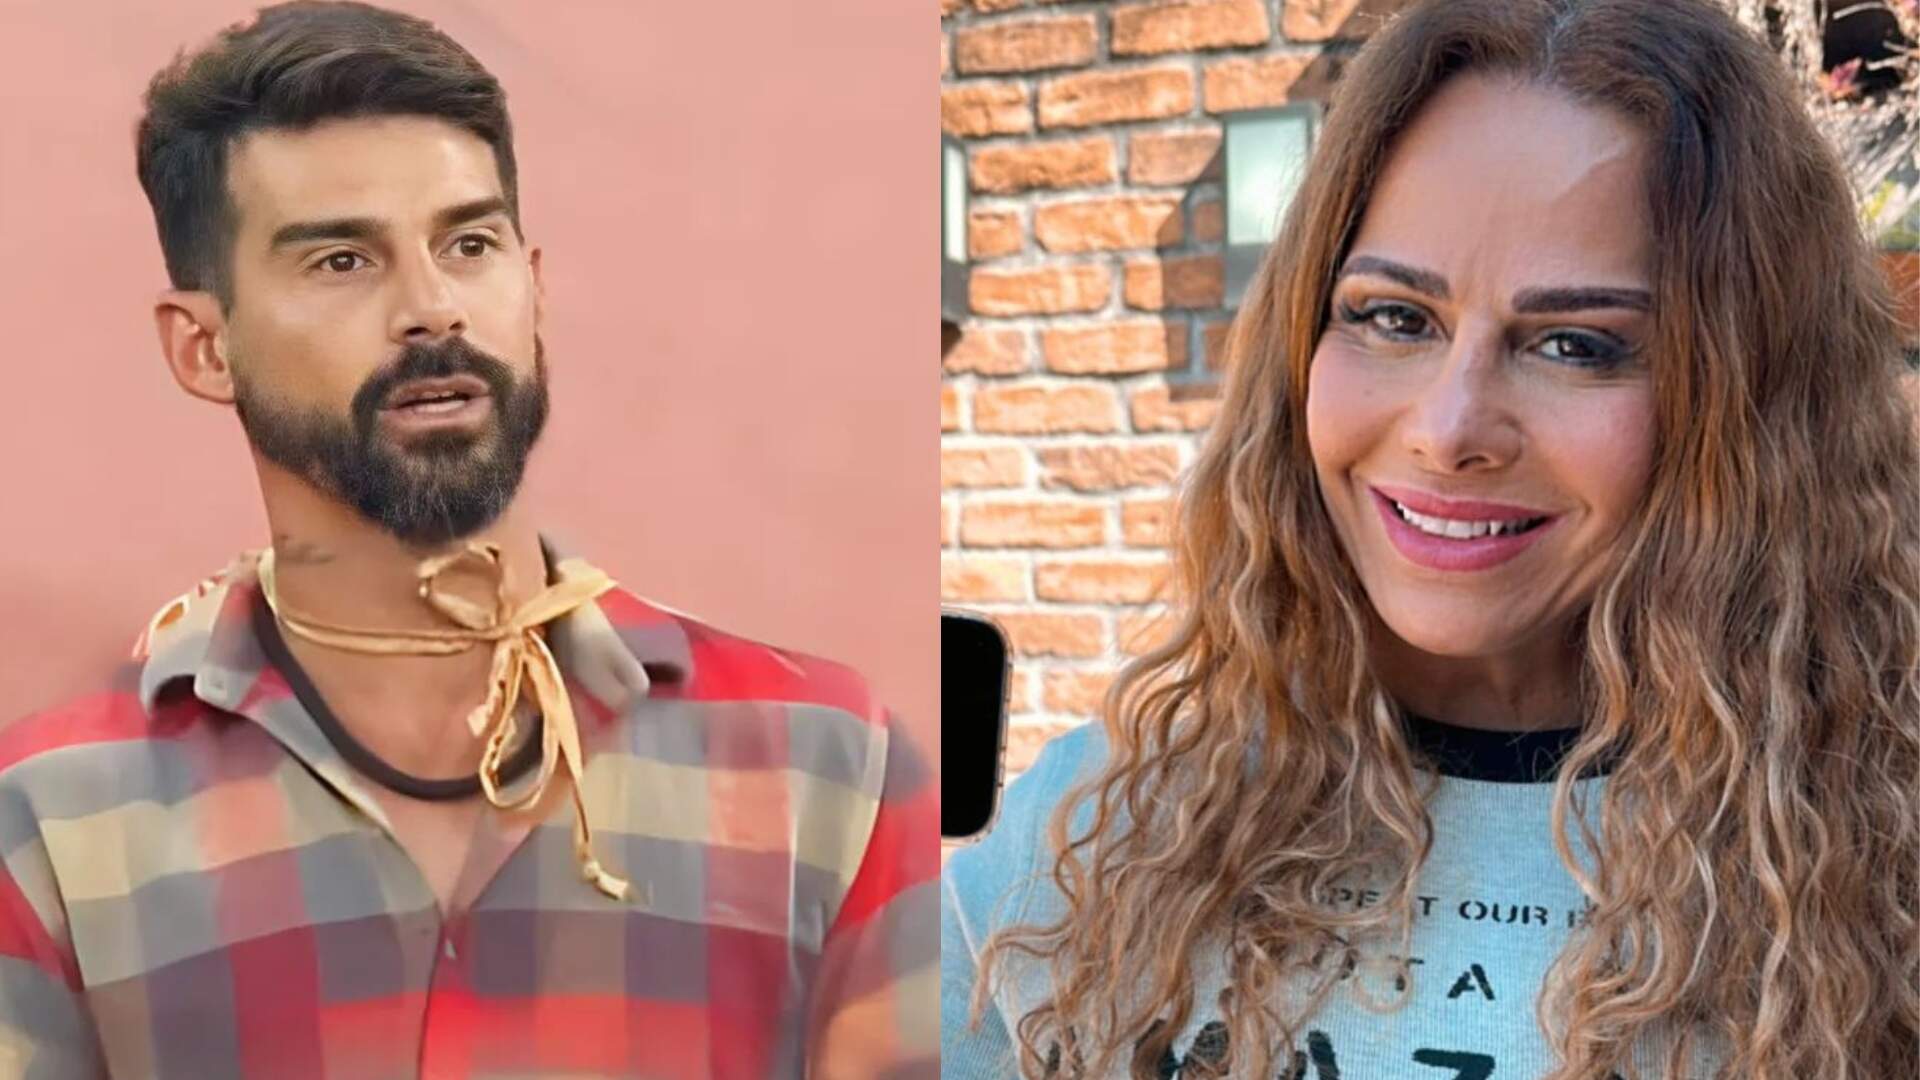 A Fazenda 15: Radamés relata divórcio conturbado com Viviane Araújo: “Falam que eu roubei ela” - Metropolitana FM